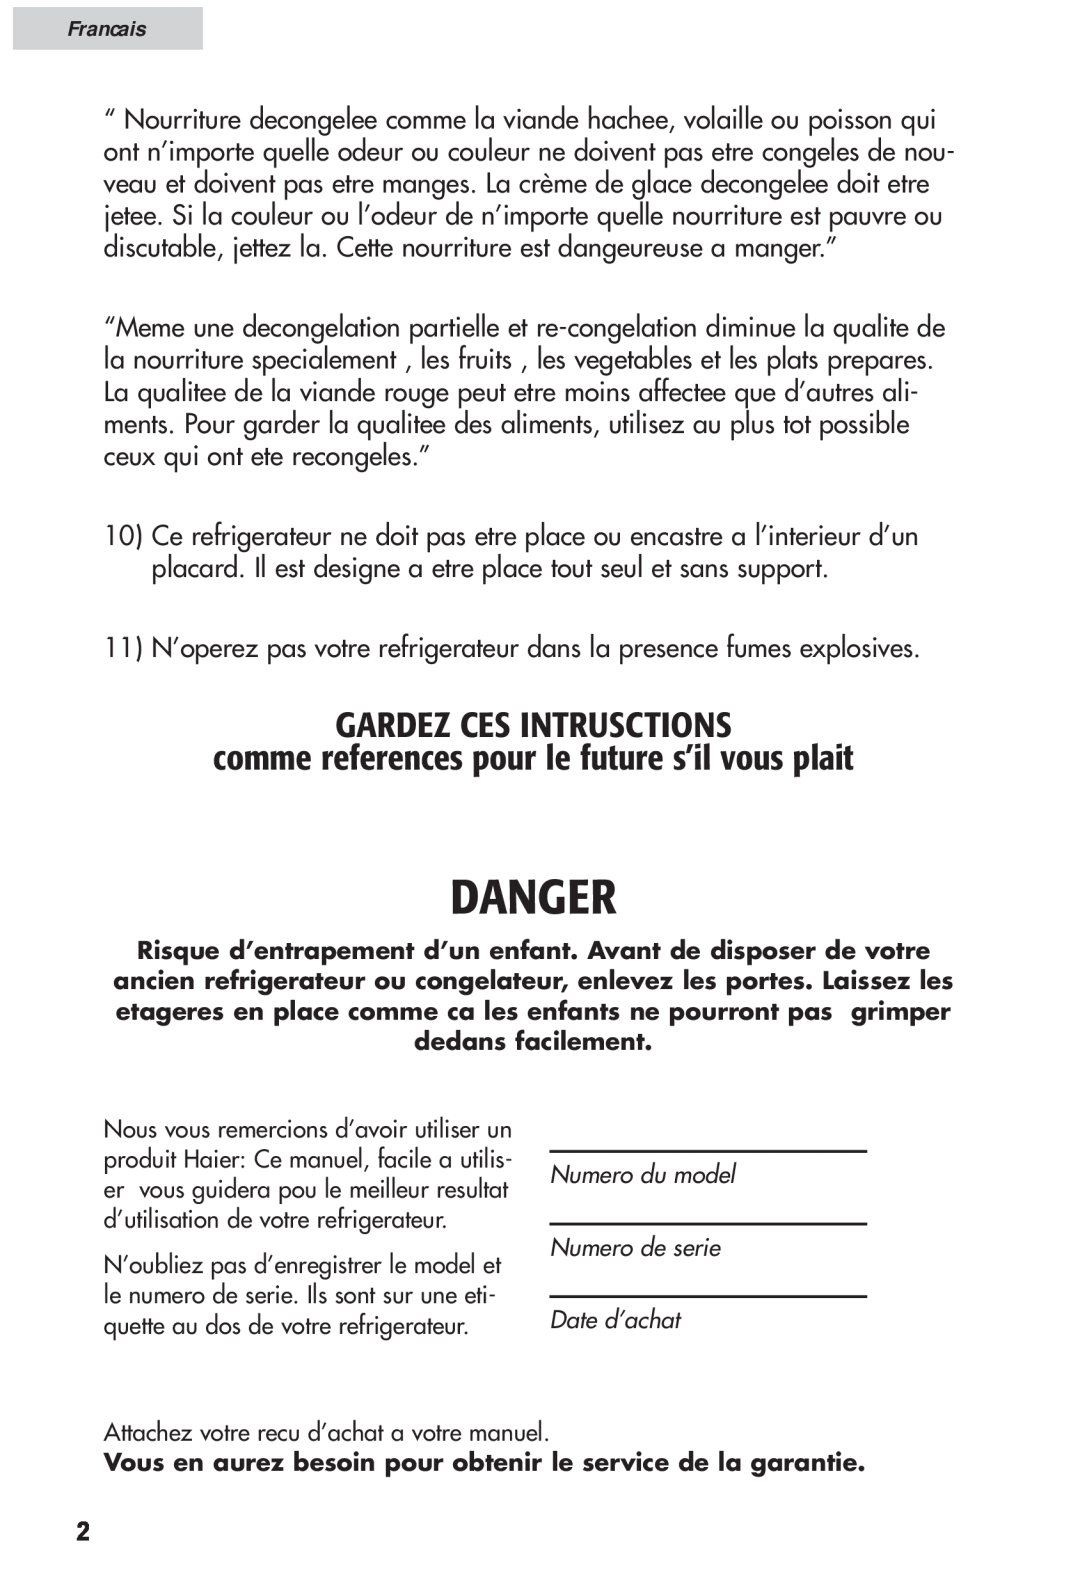 Haier HRF12WNDWW user manual Gardez Ces Intrusctions, comme references pour le future s’il vous plait, Danger, Francais 